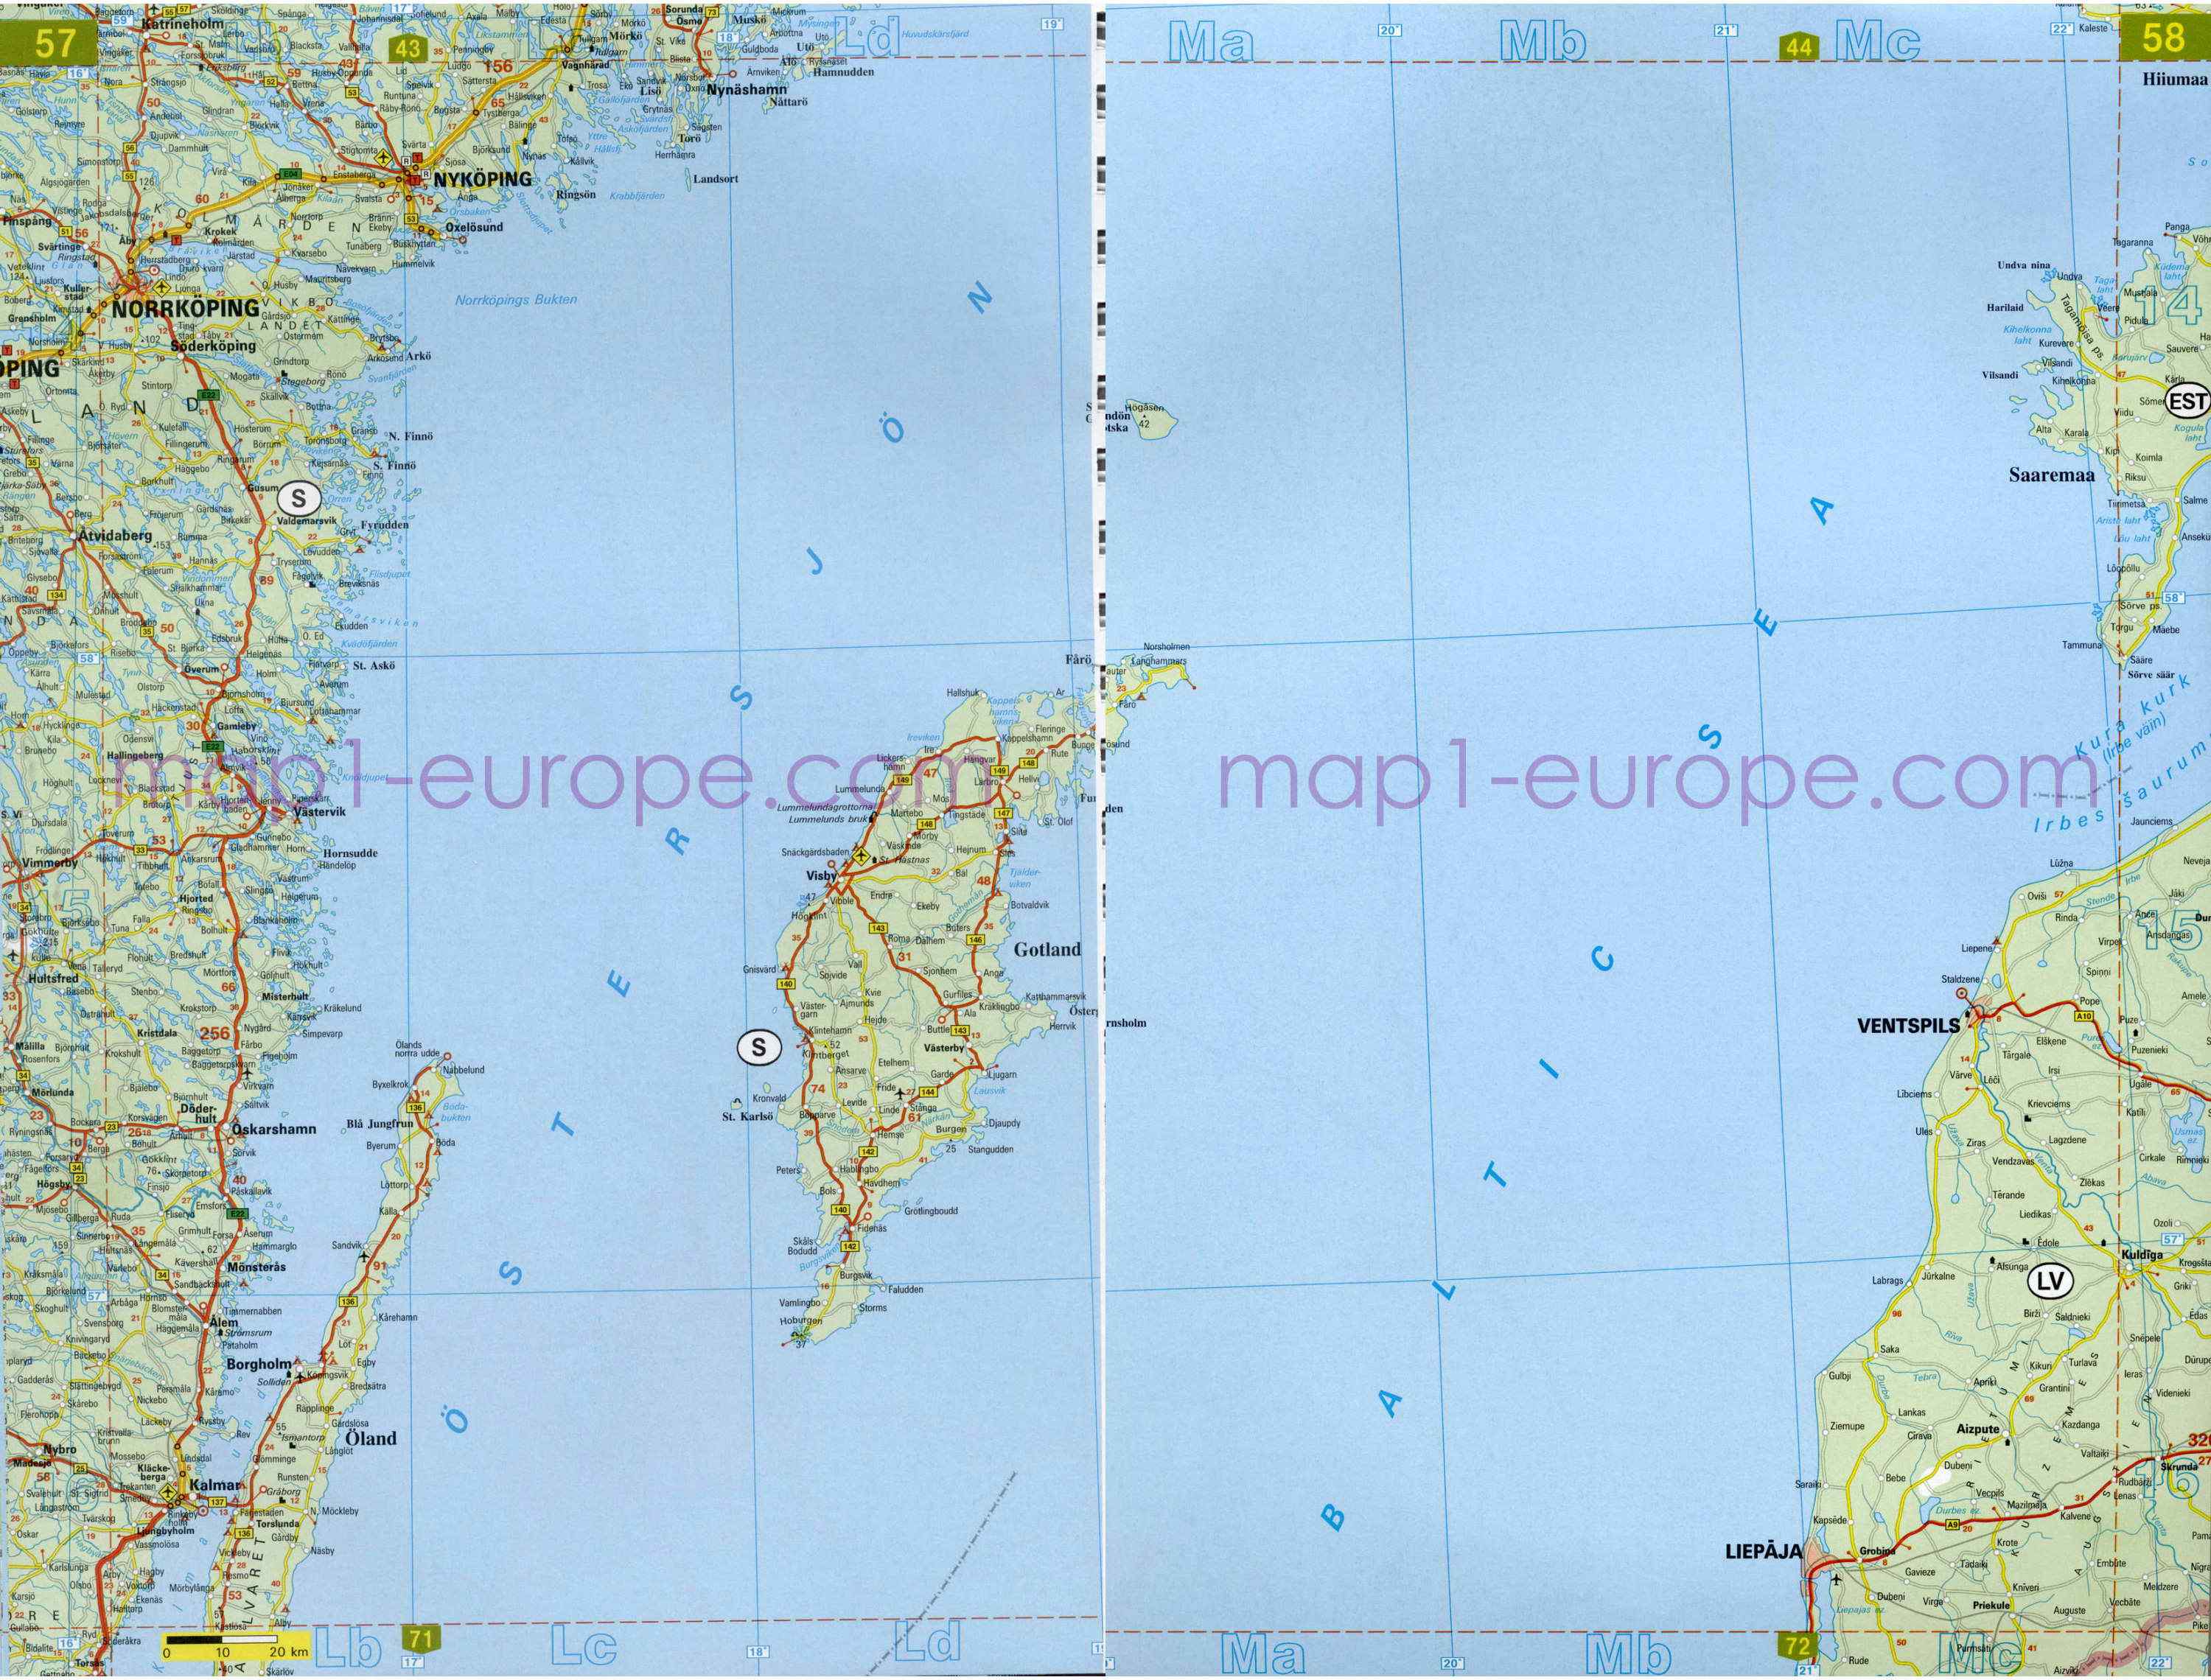 Автомобильная карта Европы. Атлас автомобильных дорог Европы на общей карте, G1 - 